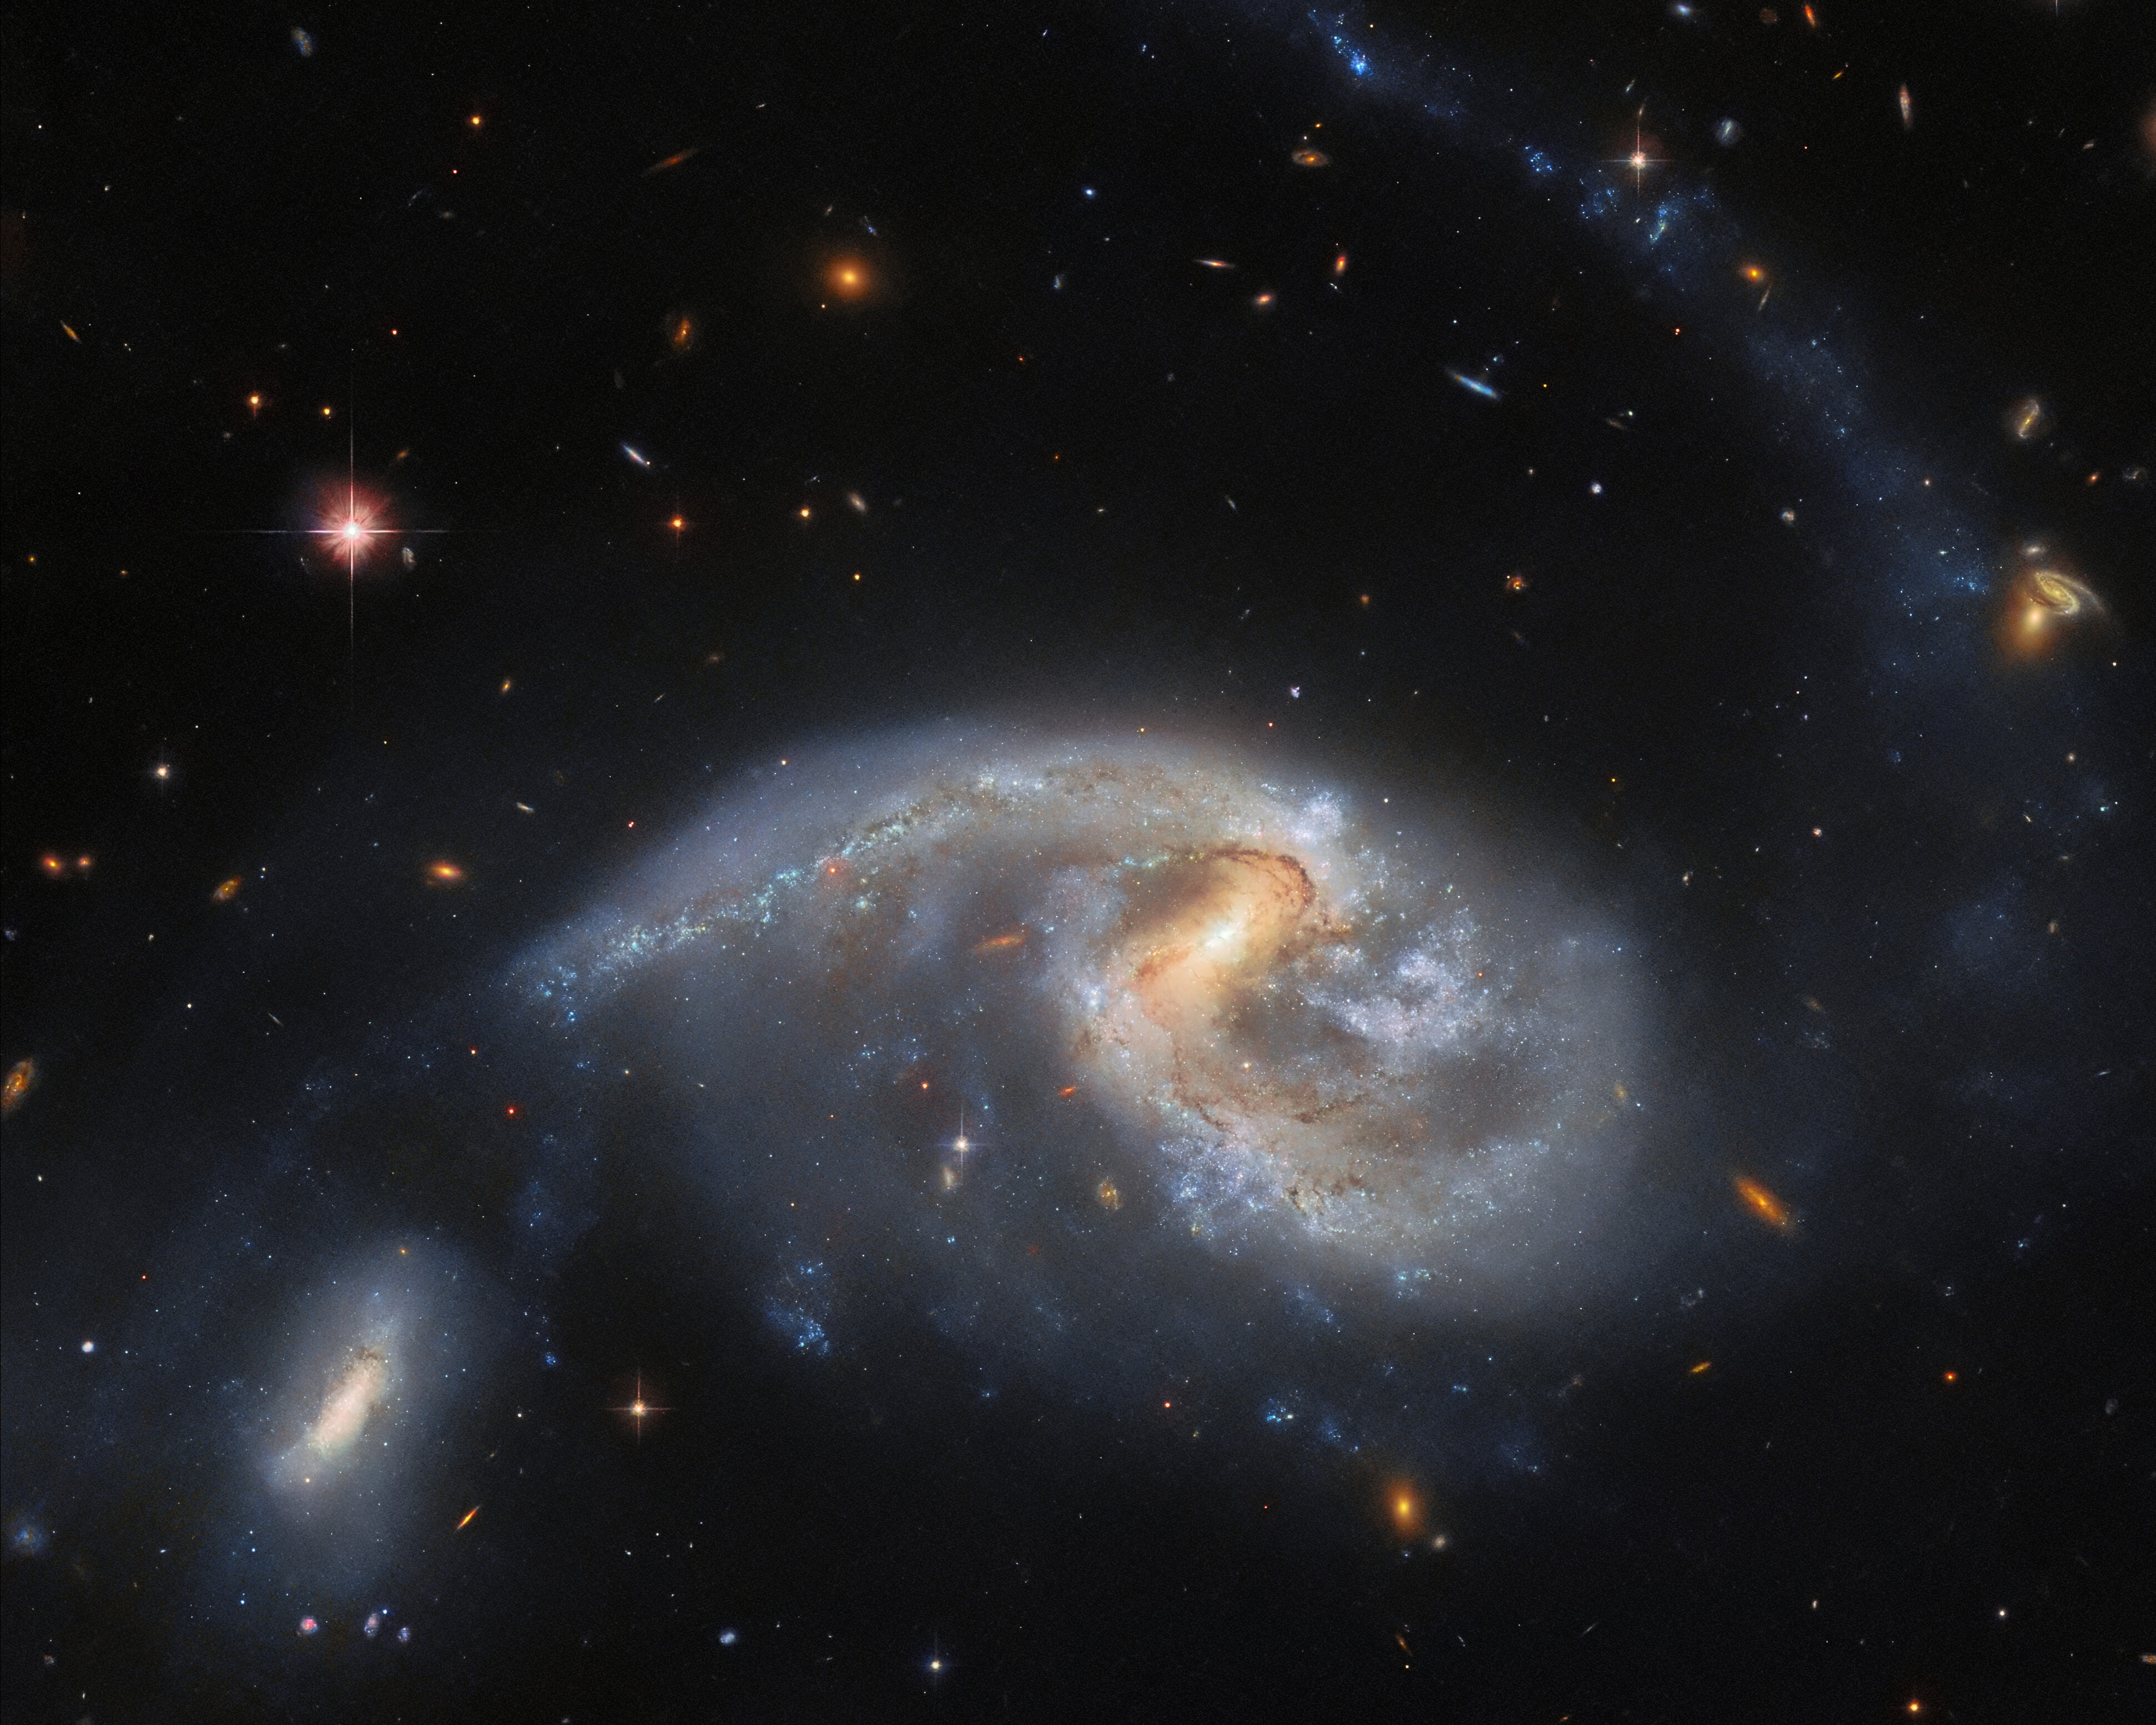 Una gran galaxia espiral con una galaxia vecina más pequeña. La galaxia espiral es ancha y distorsionada, con polvo de colores. Su compañera se encuentra cerca, al final de un brazo en espiral, en la parte inferior izquierda. Una larga y tenue cola de estrellas se extiende desde el lado derecho de la galaxia espiral hasta la parte superior de la imagen. Varias galaxias pequeñas y distantes son visibles en el fondo, junto con una estrella brillante en primer plano.